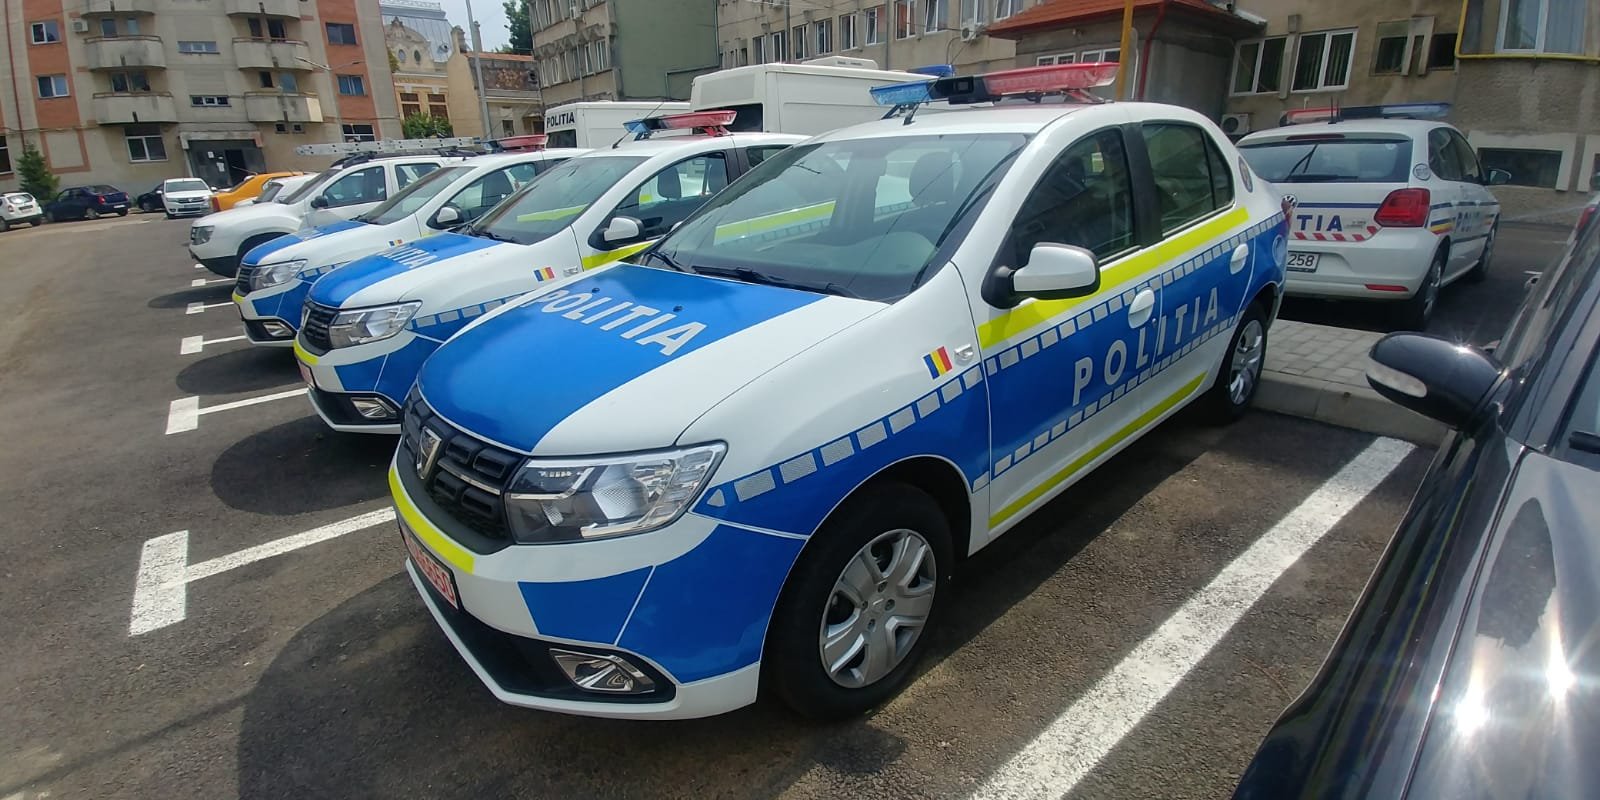  19 autospeciale noi pentru poliţiştii ieşeni. Unde vor ajunge maşinile?